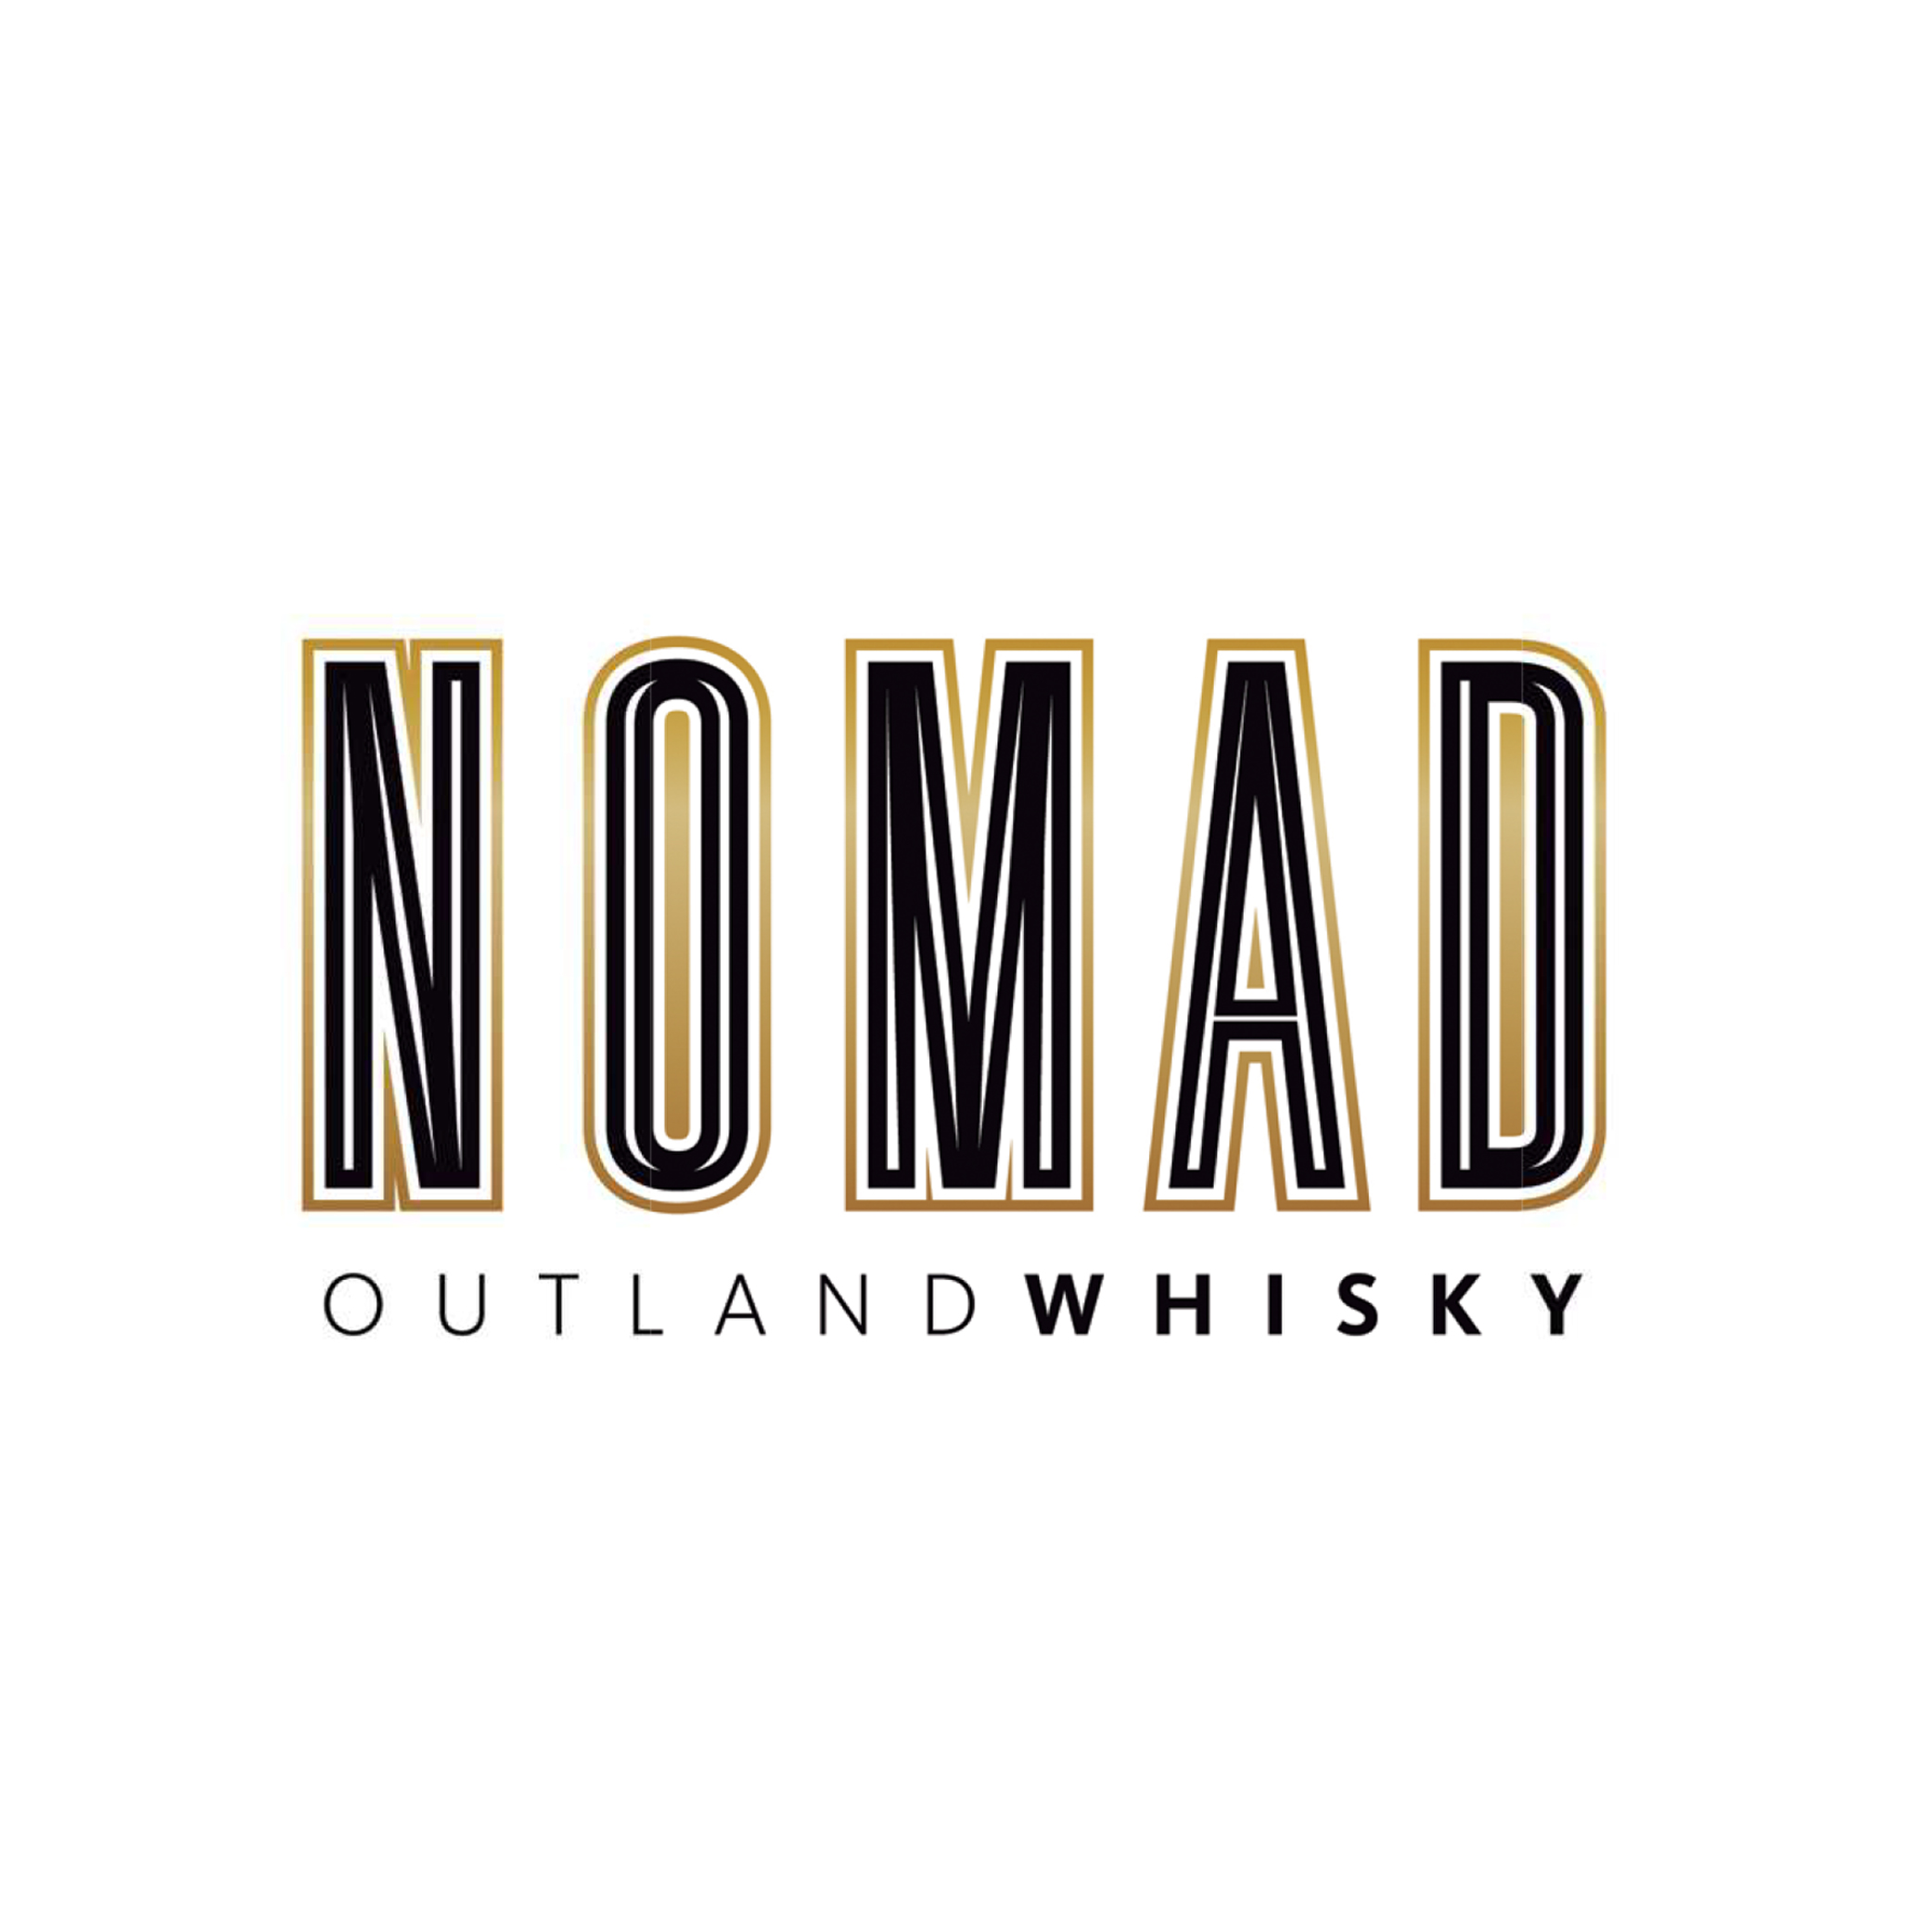 Pancaniaga Indoperkasa - Nomad Outland Whisky